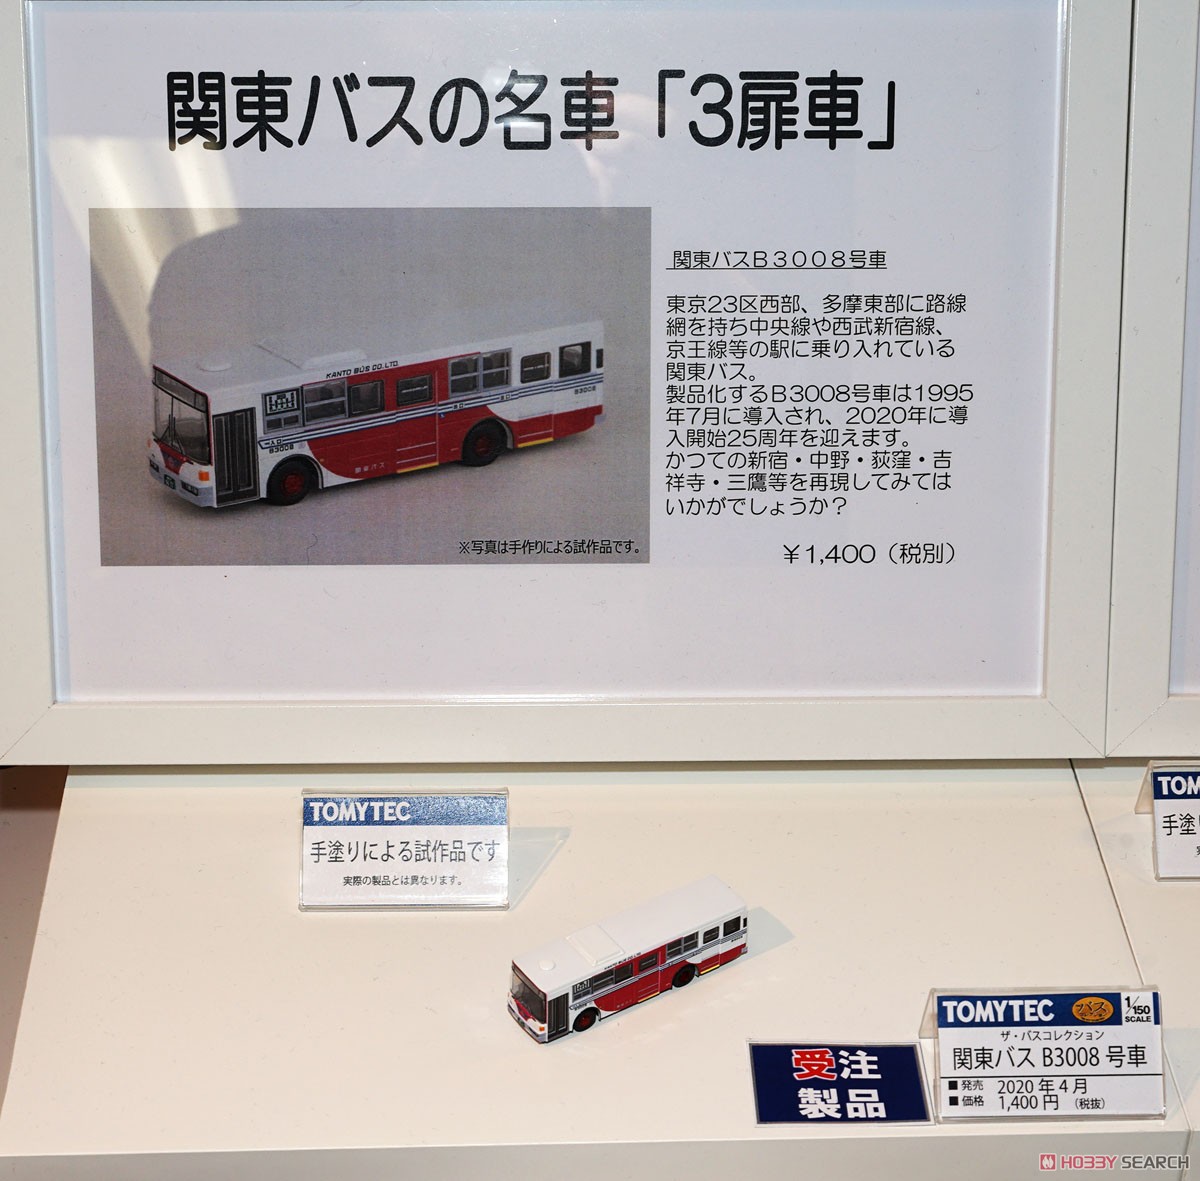 ザ・バスコレクション 関東バス B3008号車 (鉄道模型) その他の画像4